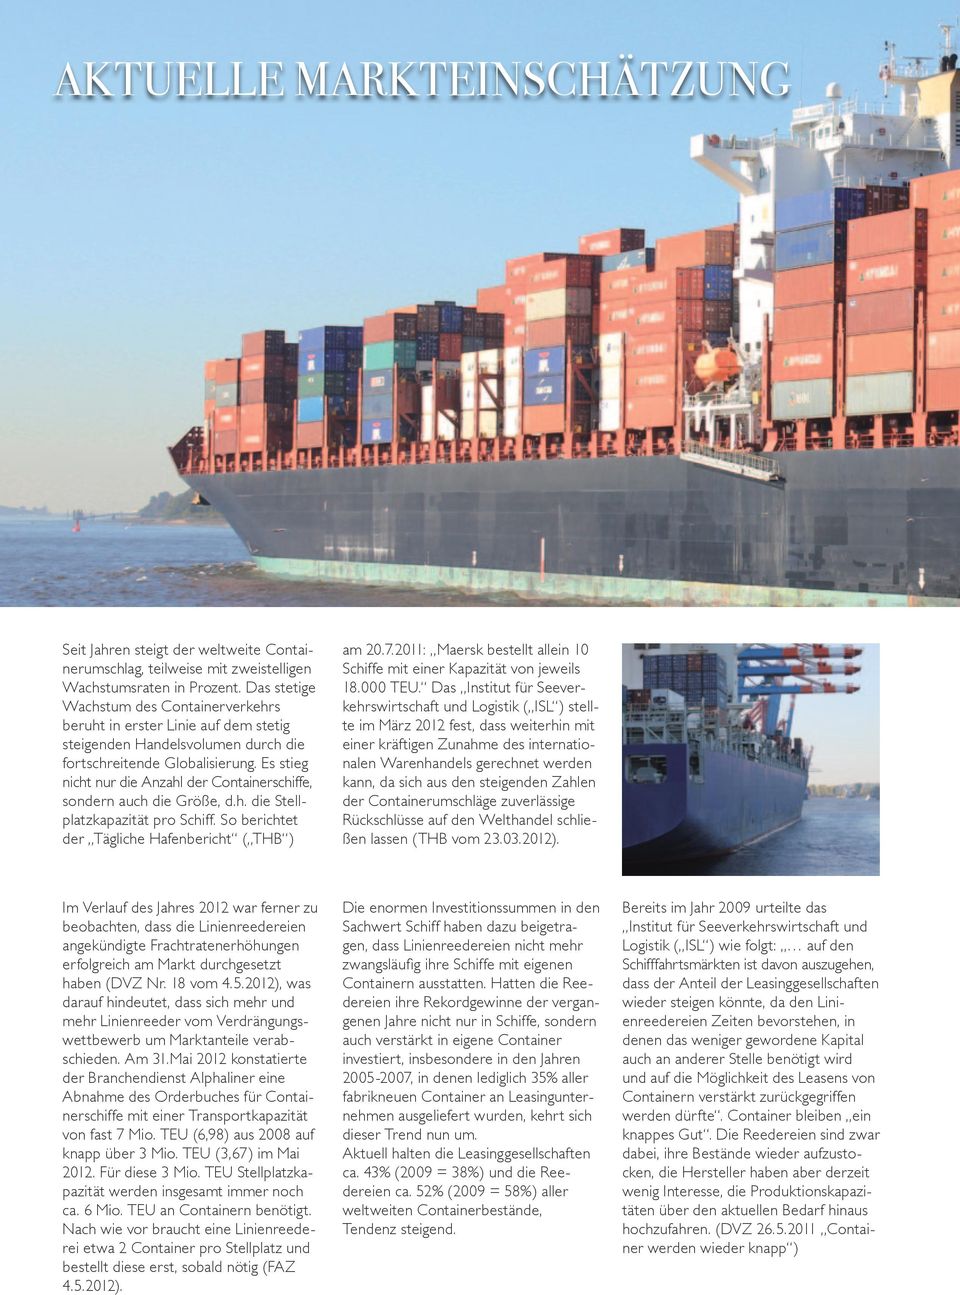 Es stieg nicht nur die Anzahl der Containerschiffe, sondern auch die Größe, d.h. die Stellplatzkapazität pro Schiff. So berichtet der Tägliche Hafenbericht ( THB ) am 20.7.